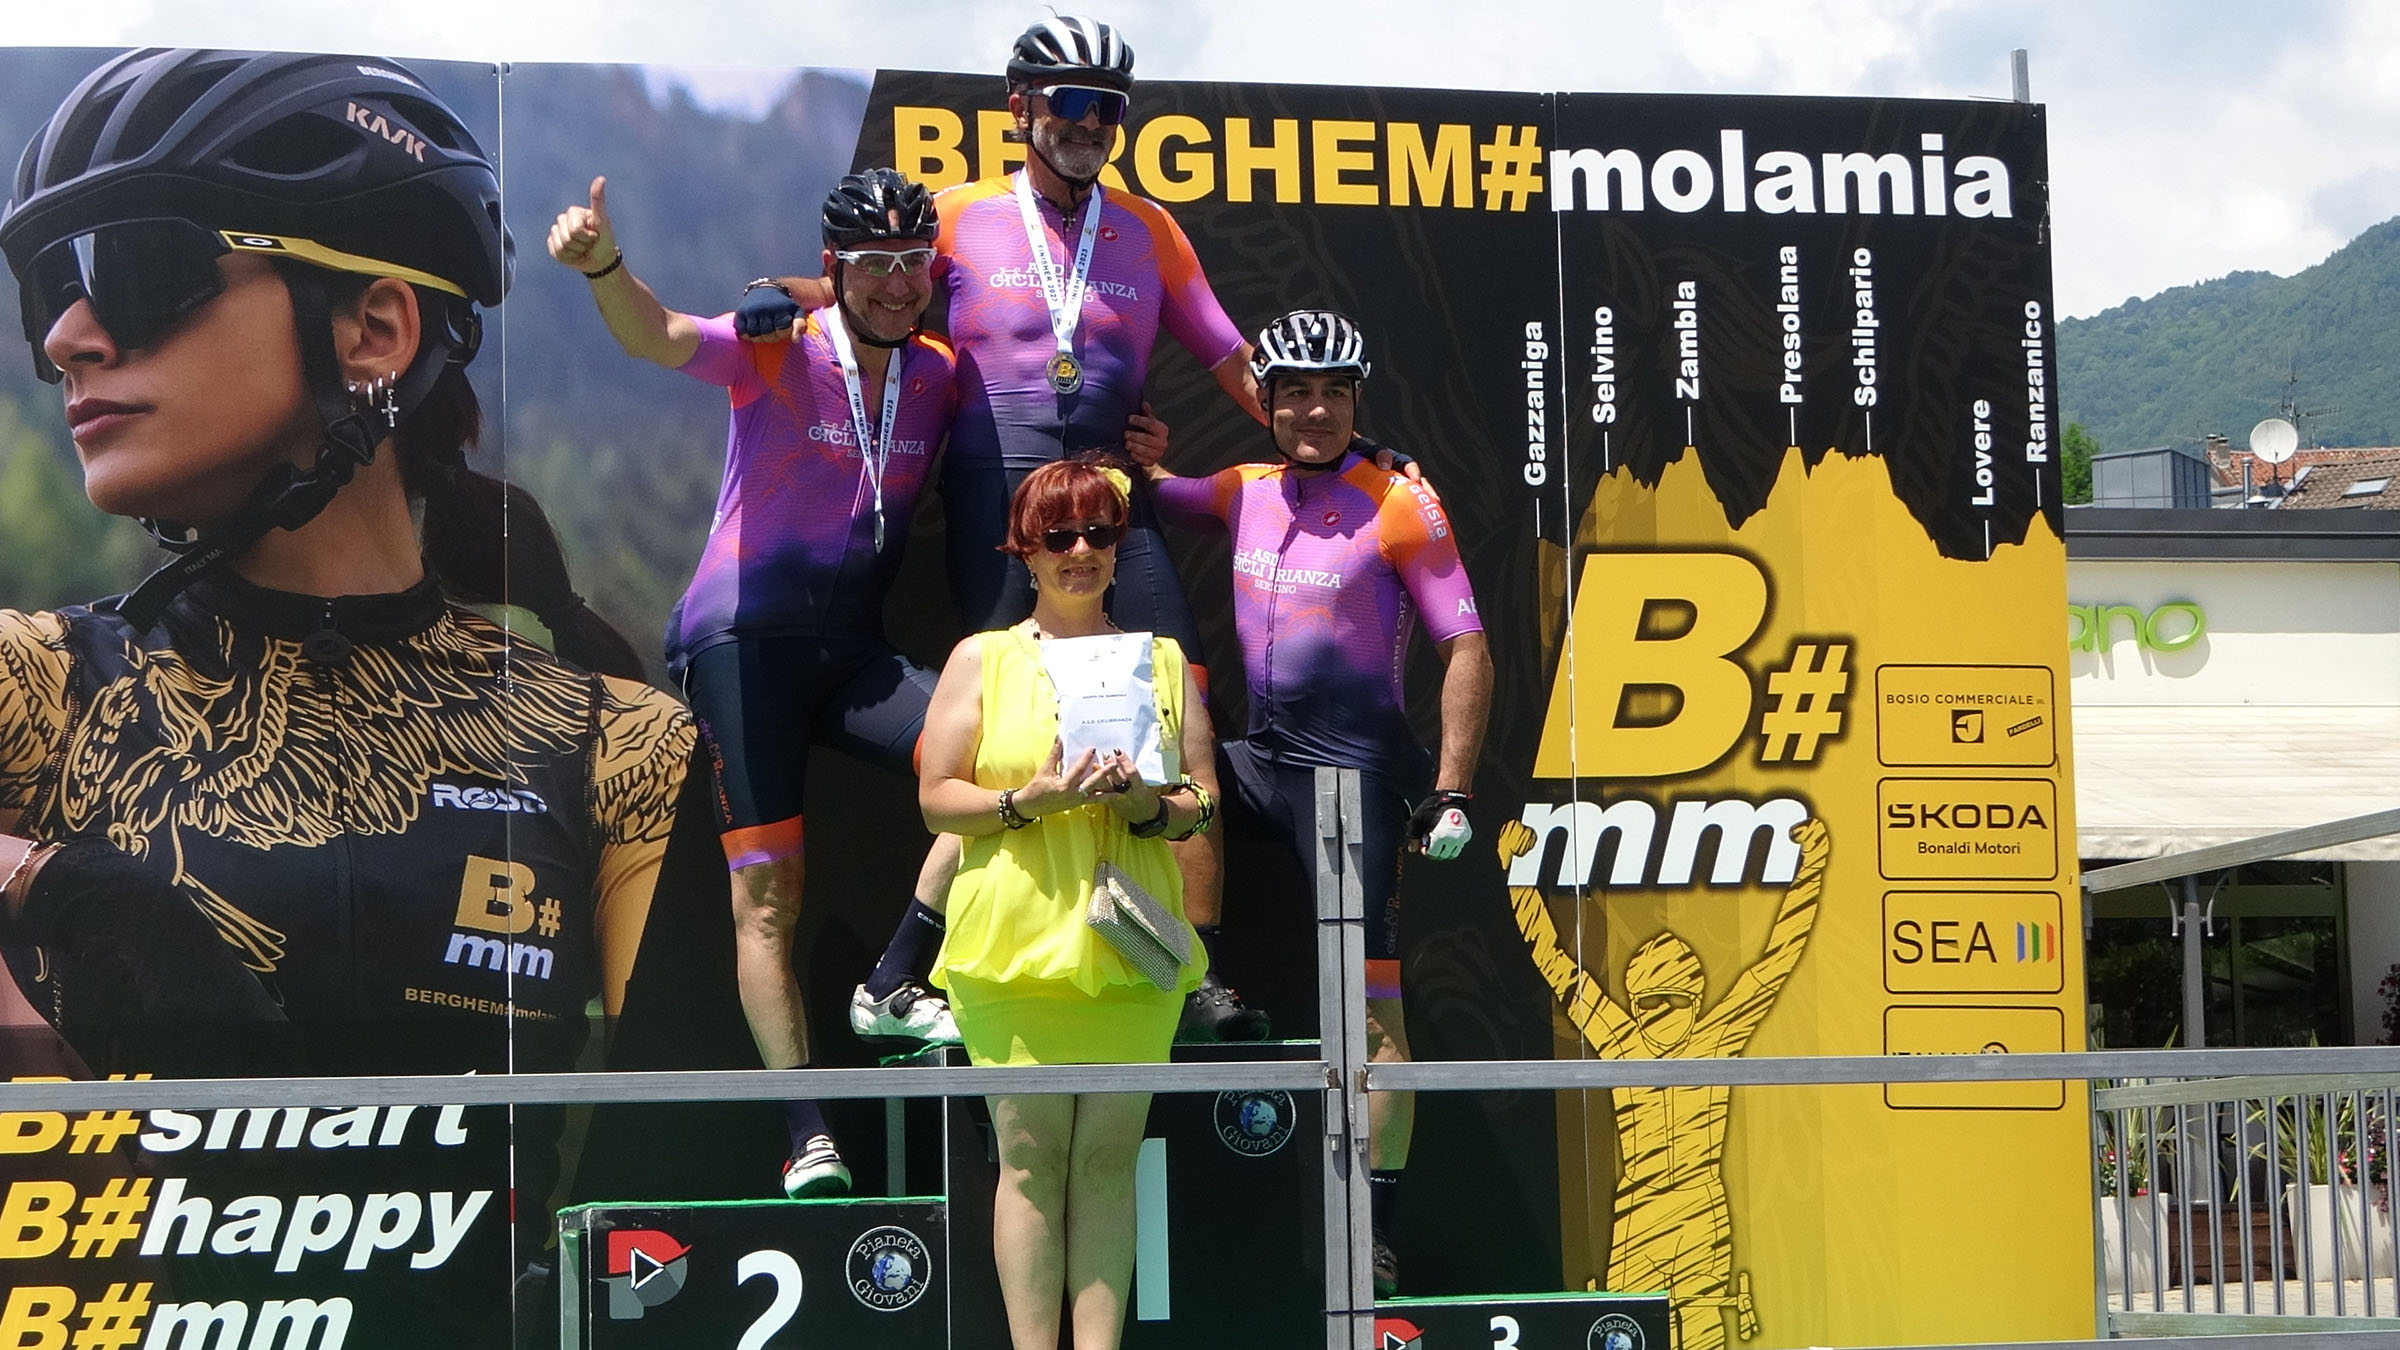 Cicli Brianza premiata come società più numerosa alla BERGHEM#molamia 2023